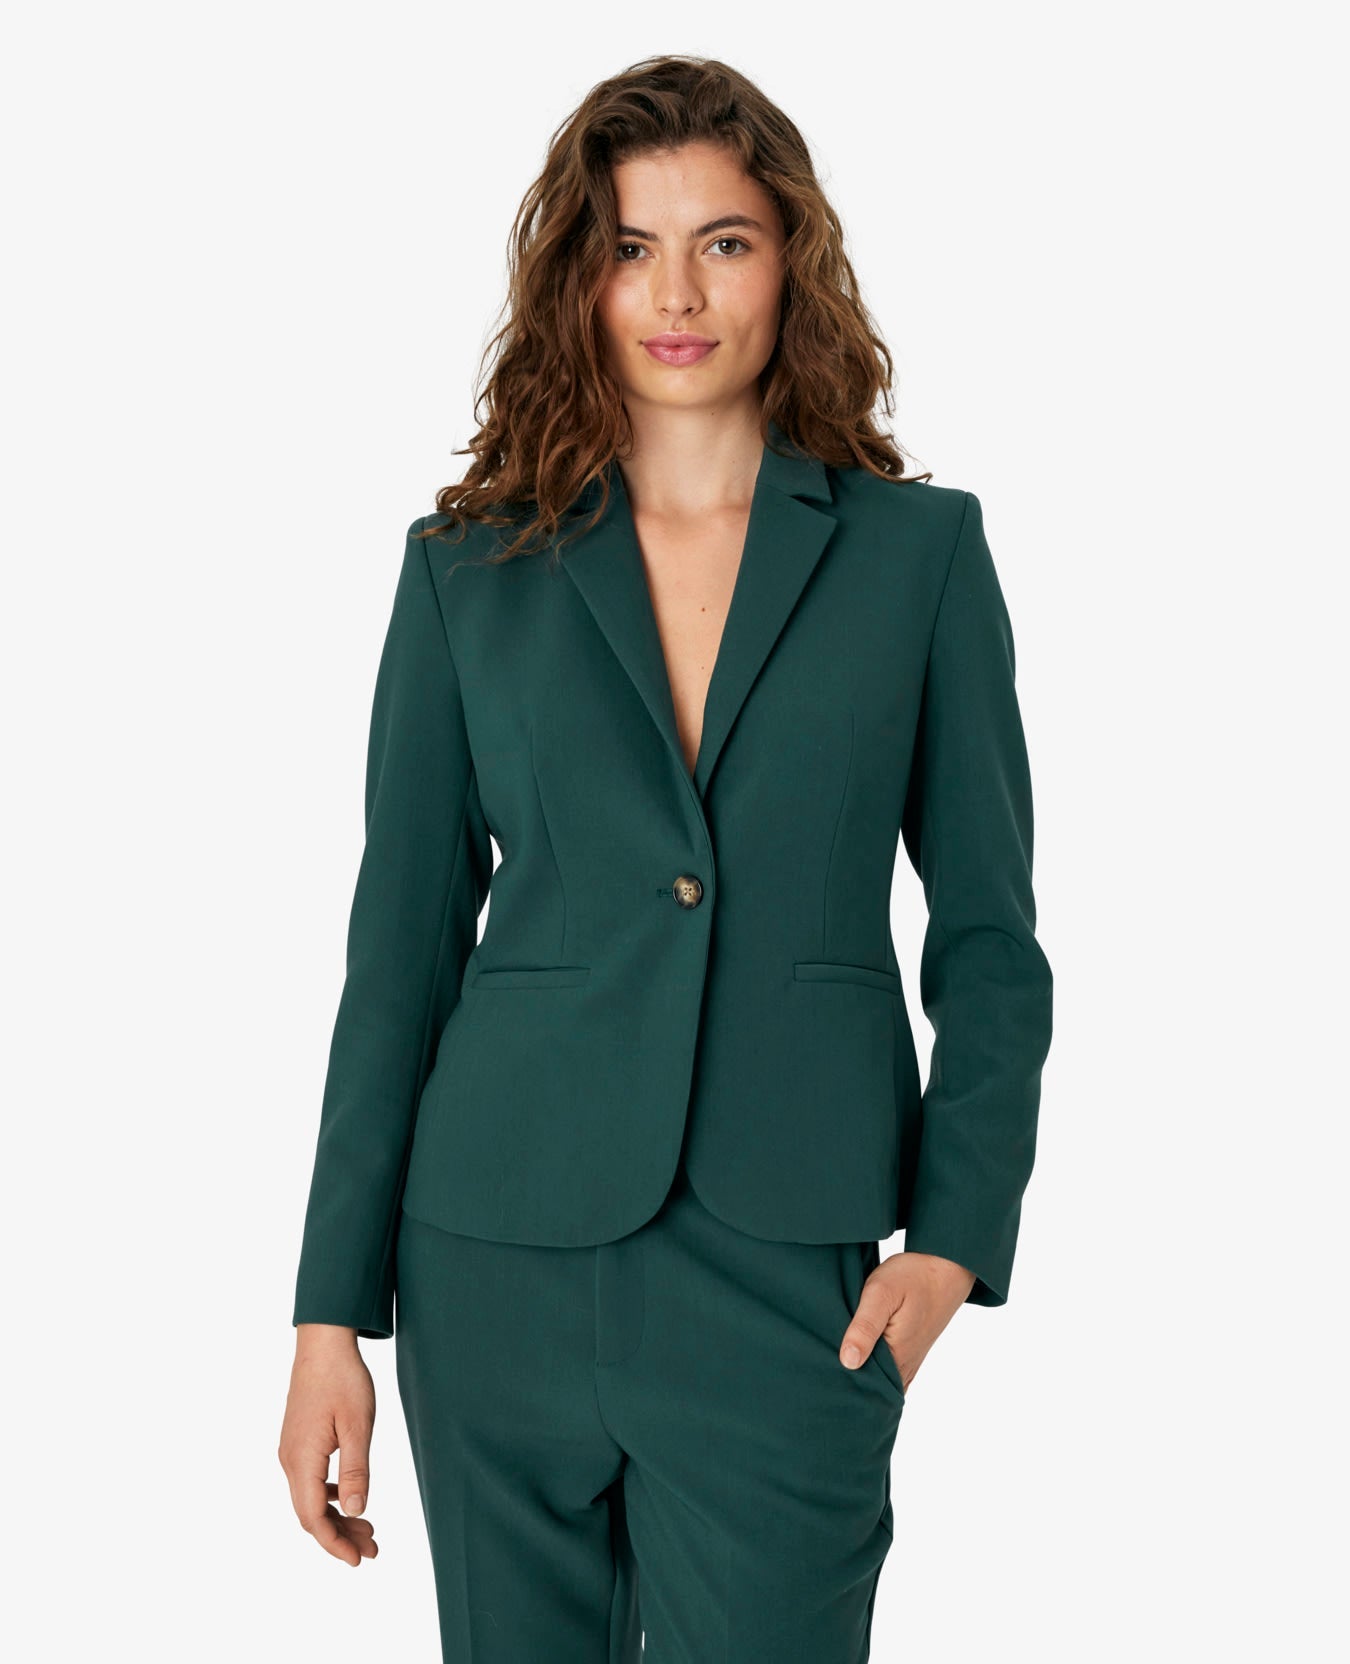 Noa Noa Felicia Suit Jacket - Green